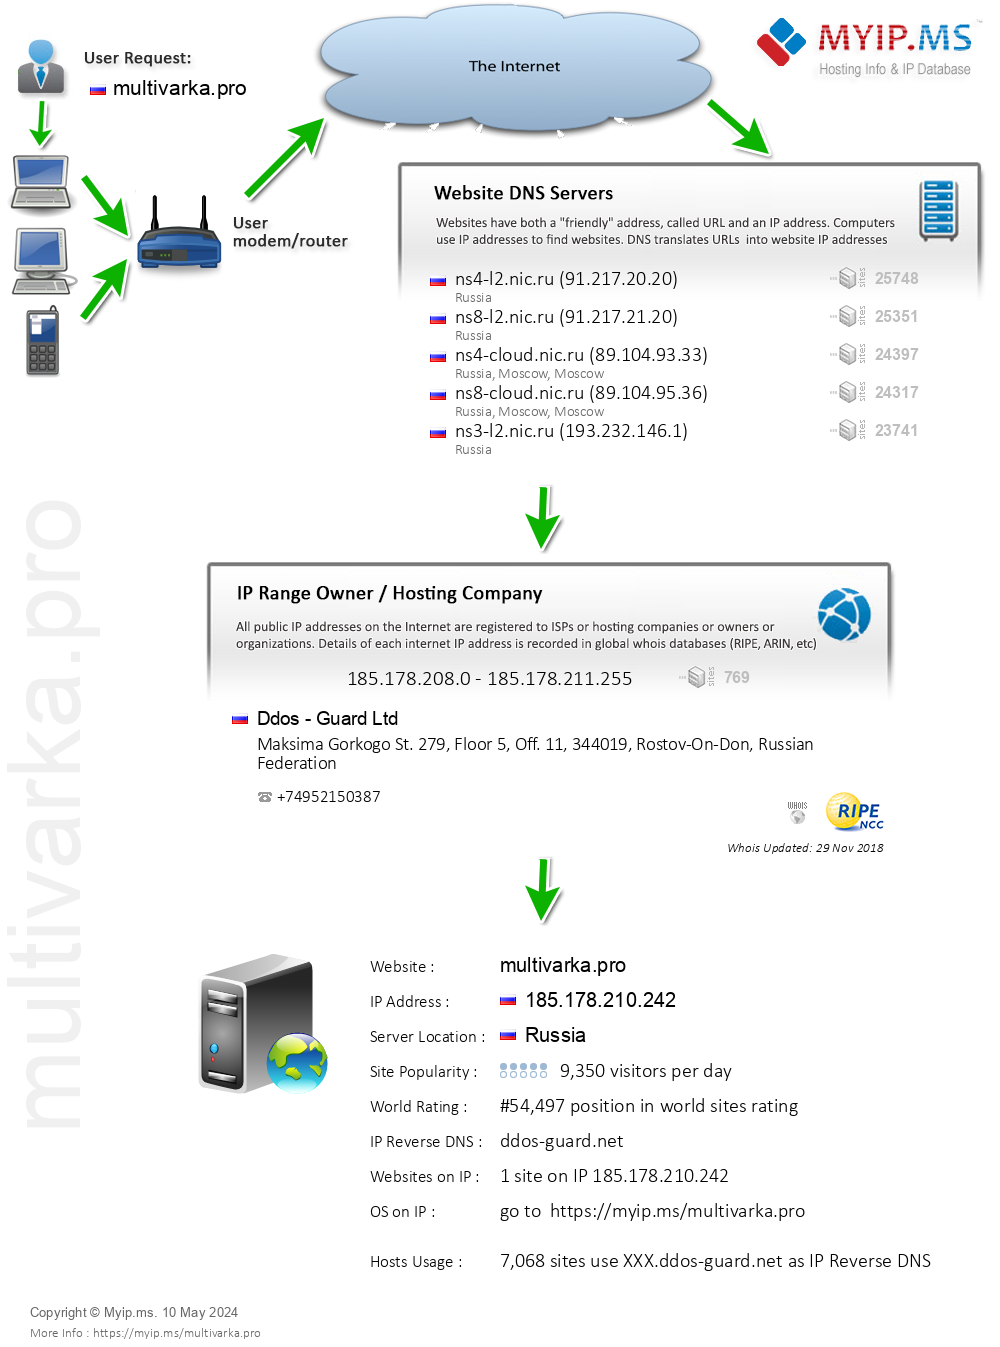 Multivarka.pro - Website Hosting Visual IP Diagram